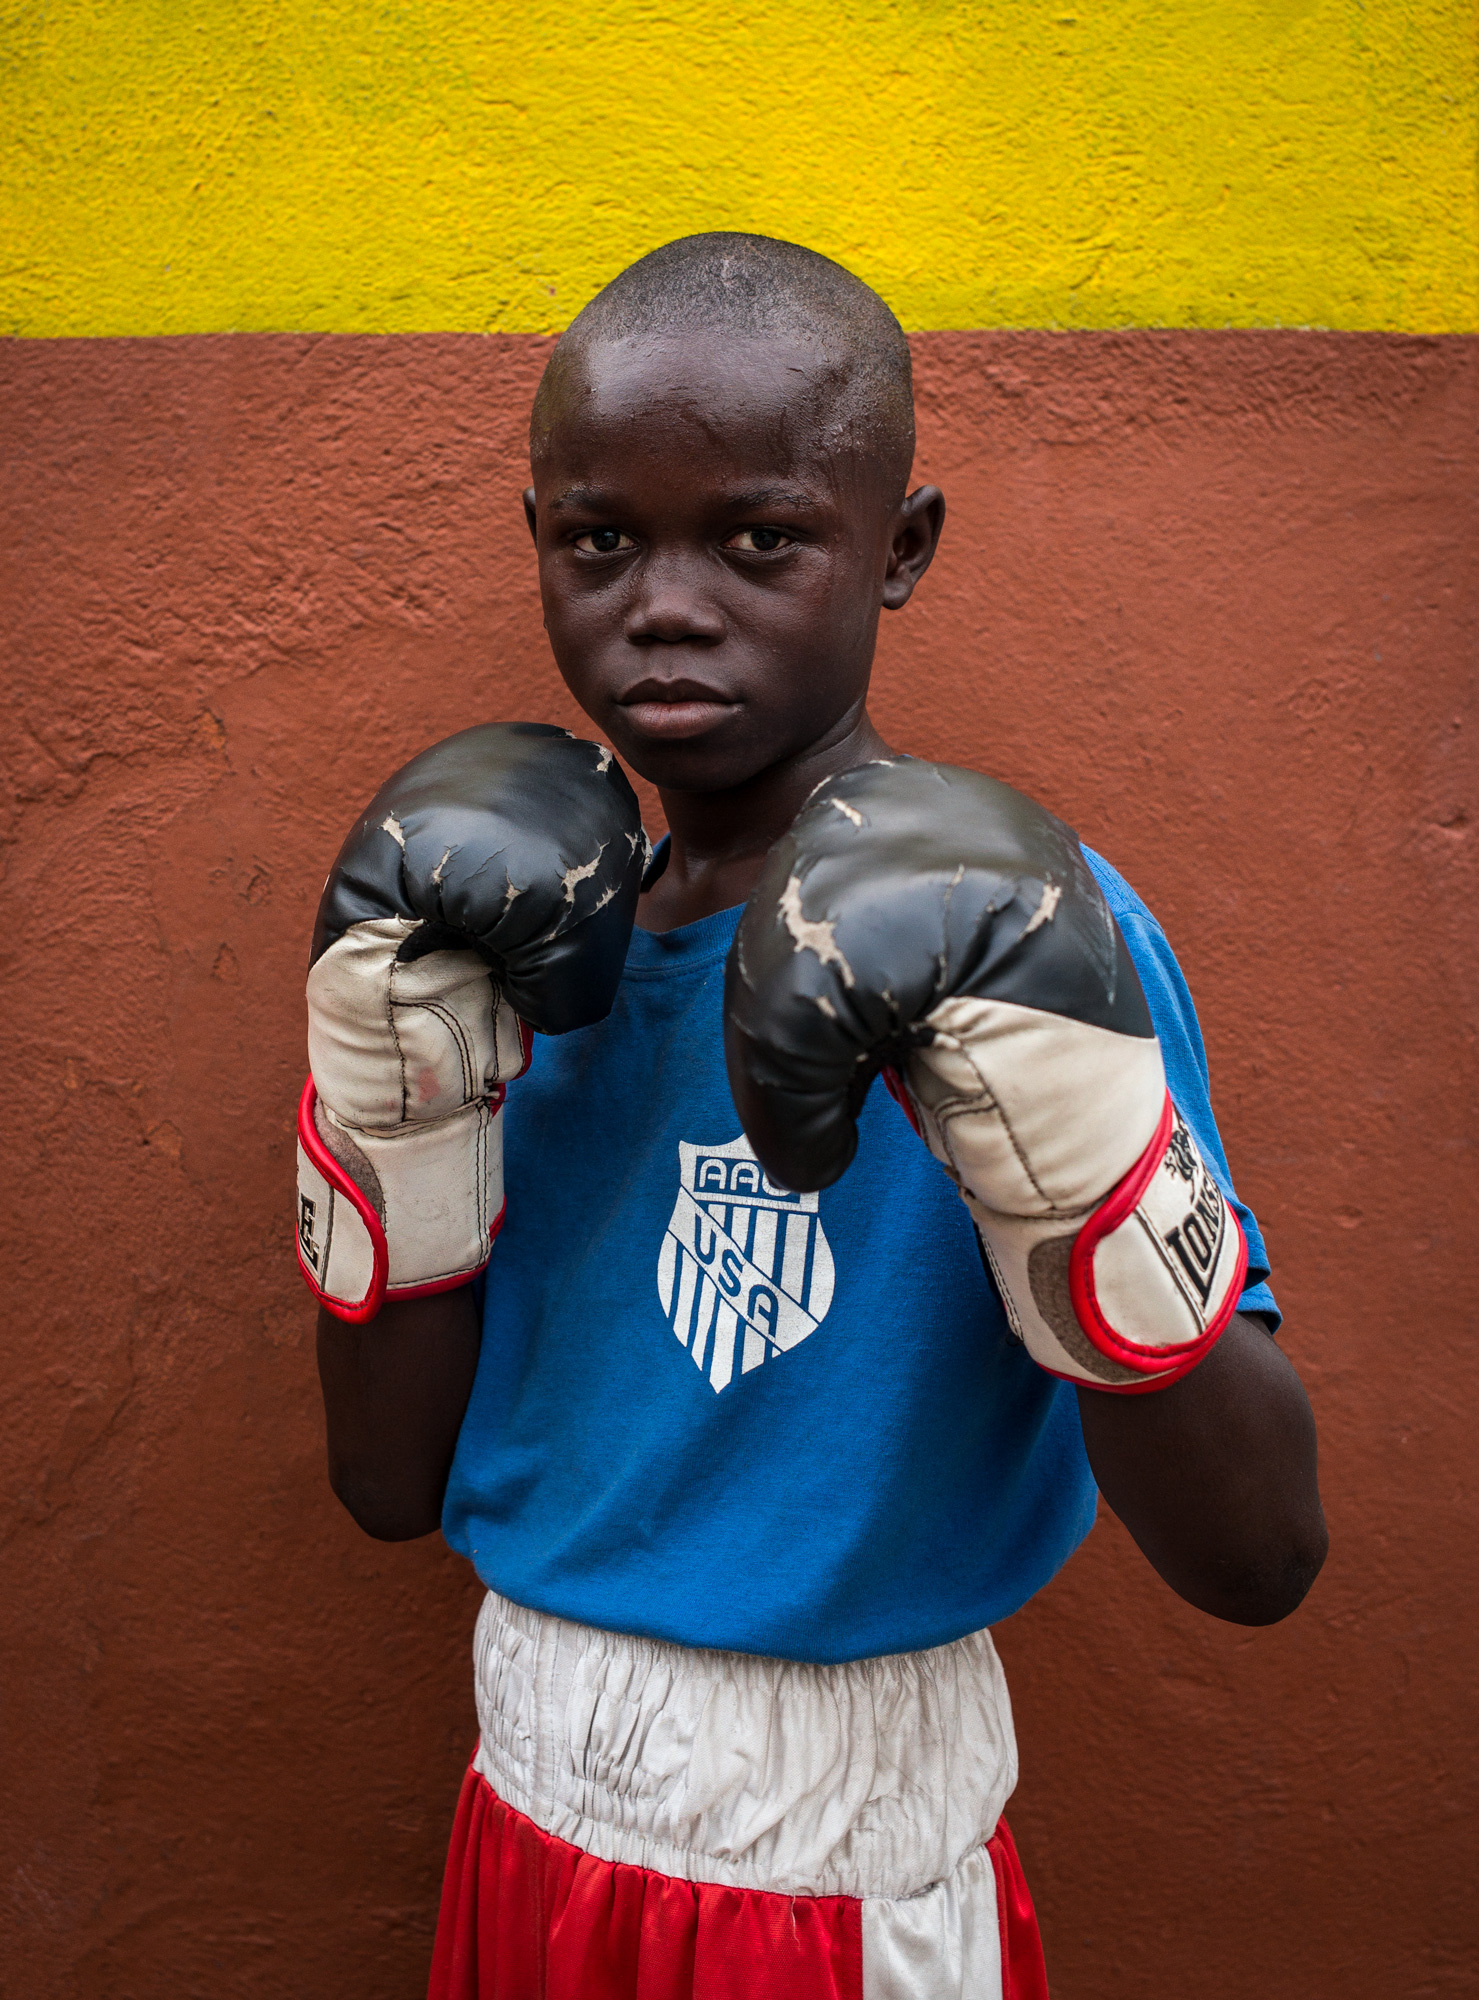  Ebanezer Ankrah, 11, training at the Black Panthers boxing Gym, Jamestown 